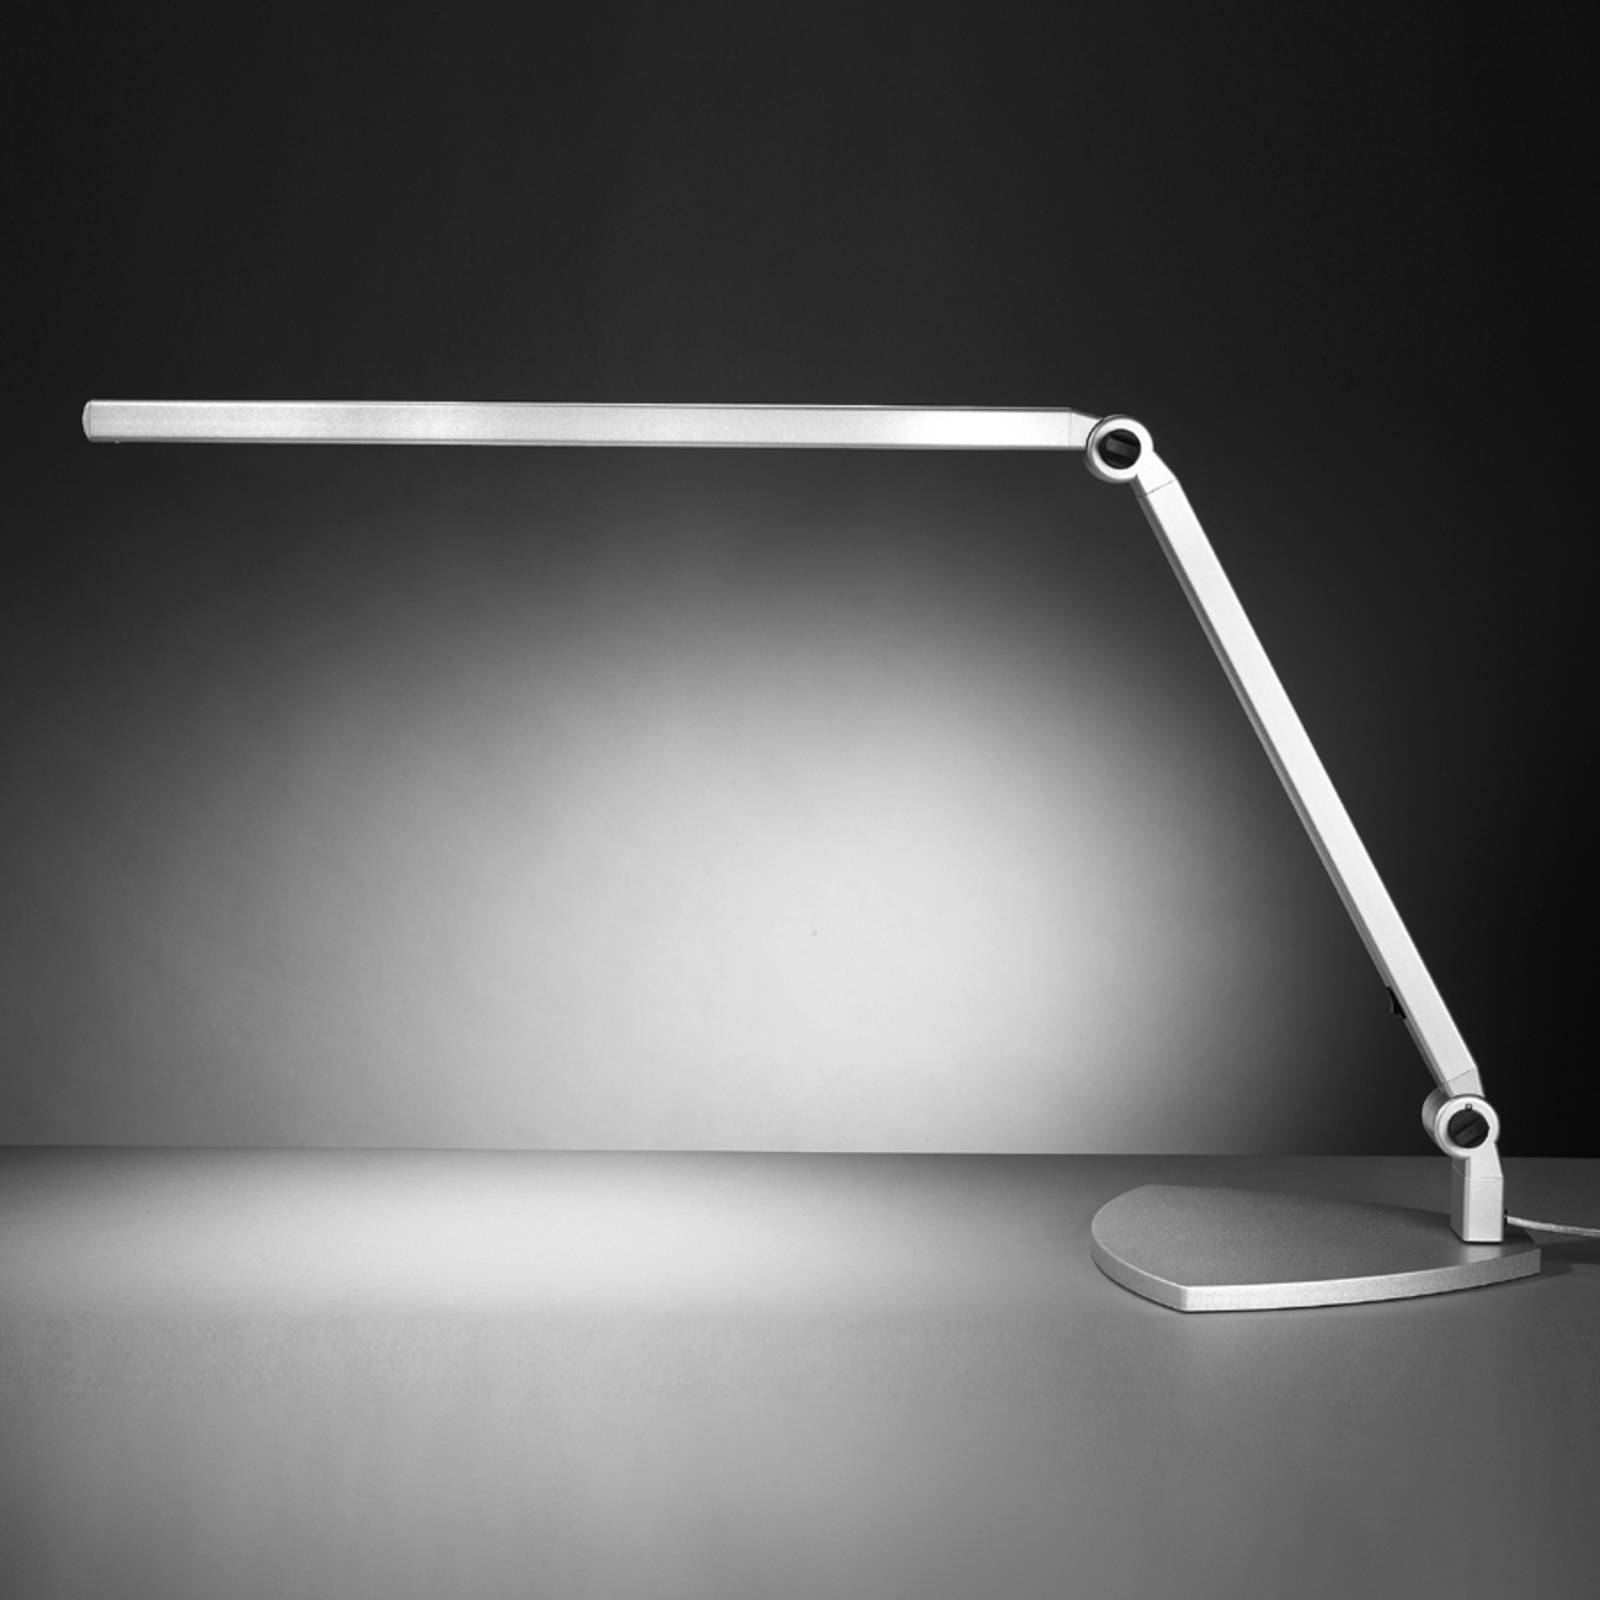 Sis-licht led asztali lámpa take 5 bázissal, nappali fény, fényerőszabályozóval